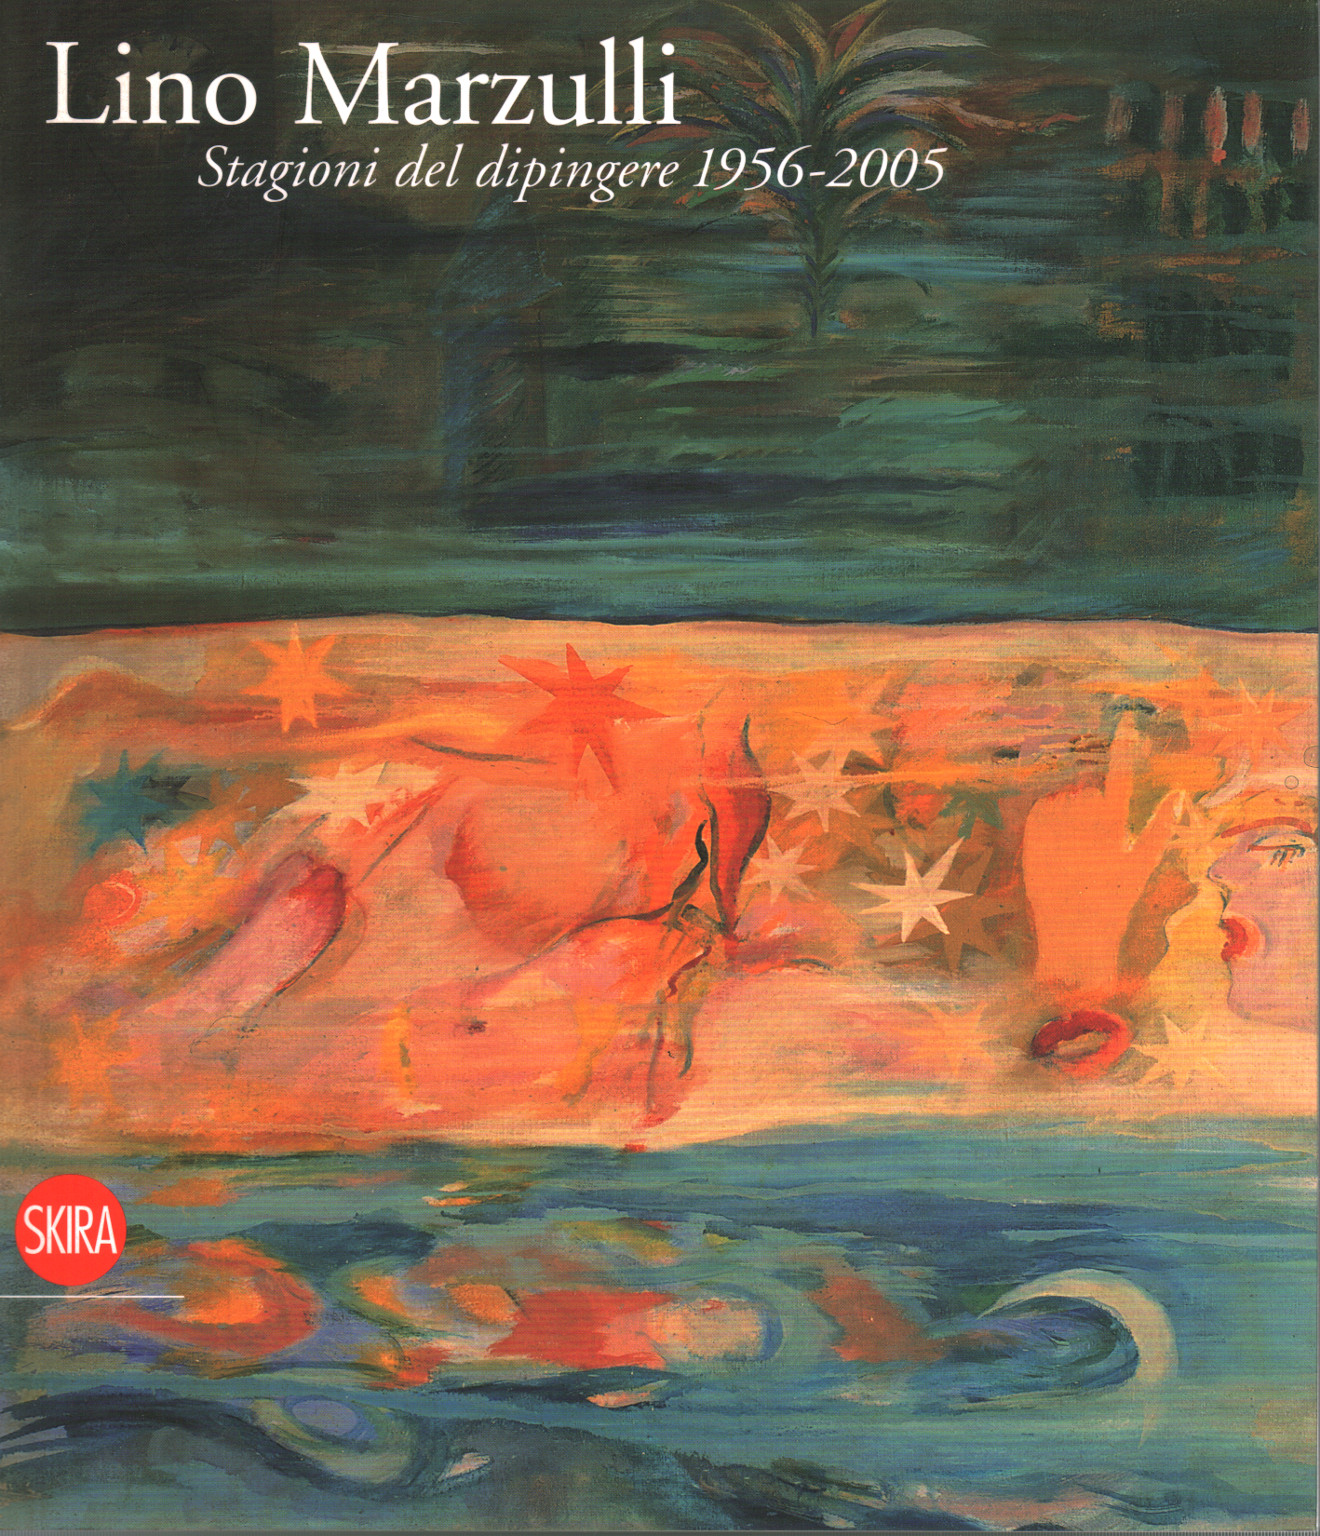 Lino Marzulli. Las estaciones de la pintura 1956-2005, s.una.